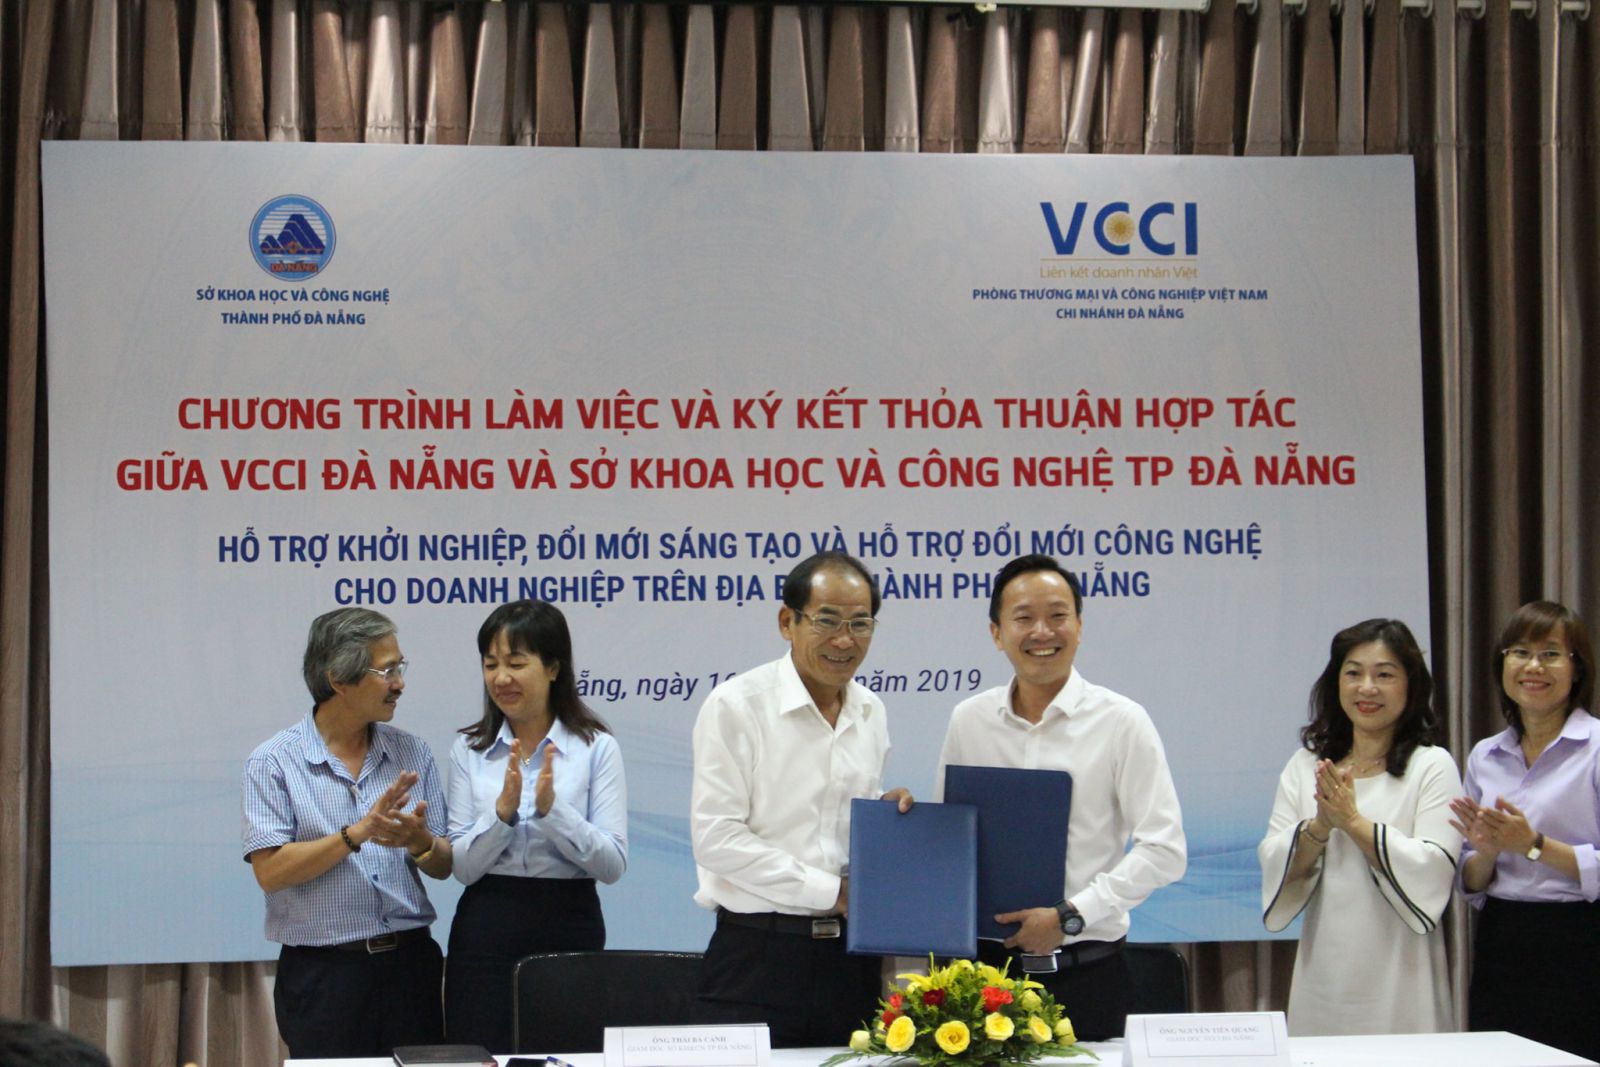 VCCI Đà Nẵng và Sở KHCN TP.Đà Nẵng ký kết hỏa thuận hỗ trợ khởi nghiệp đổi mới sáng tạo và hỗ trợ đổi mới công nghệ cho doanh nghiệp trên địa bàn diễn